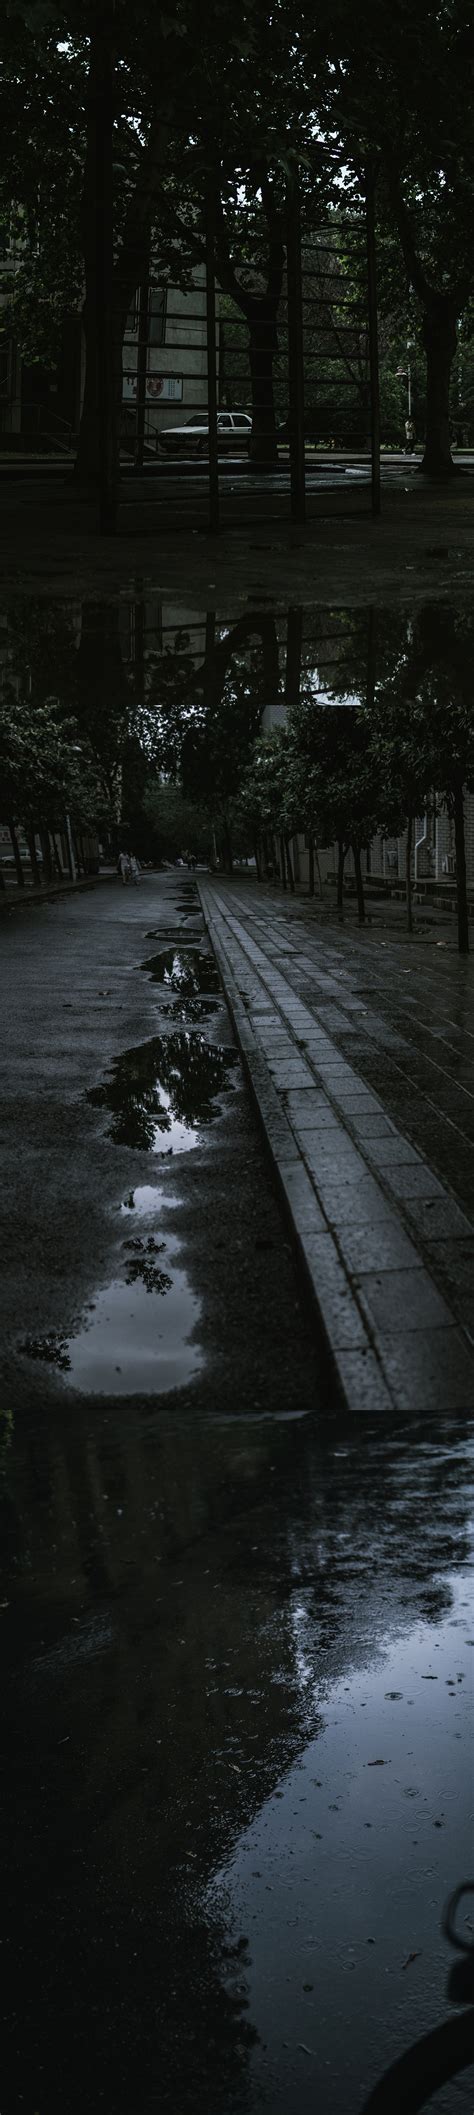 在雨中的人物逆光摄影高清图片 - 三原图库